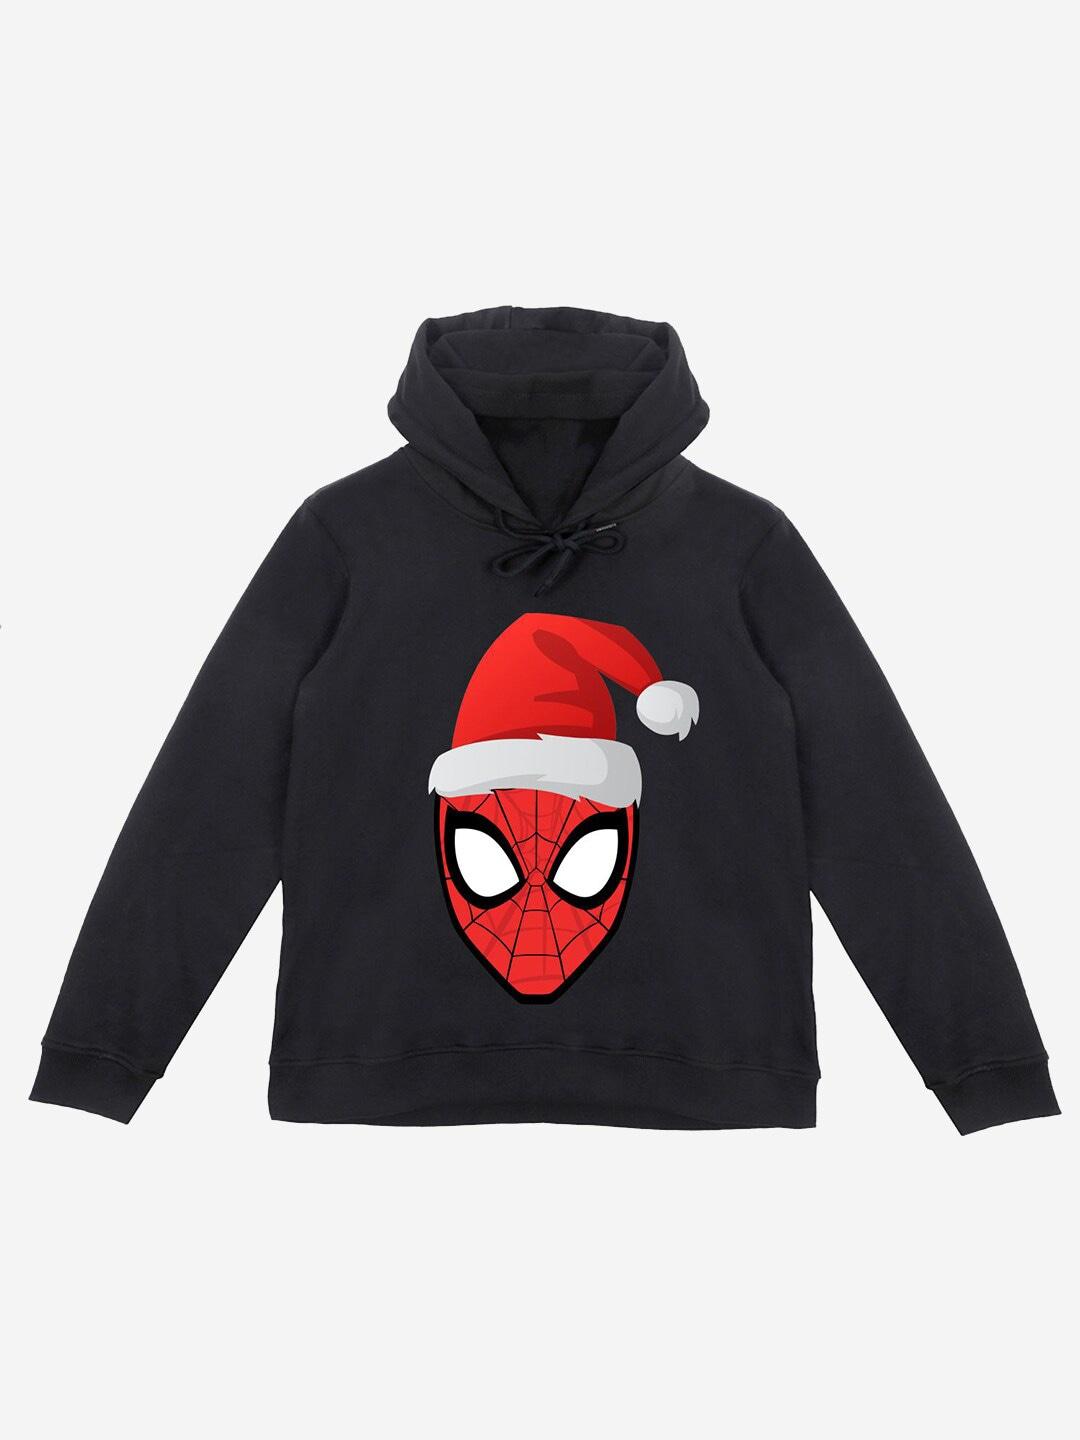 yk marvel boys black printed spiderman hooded sweatshirt